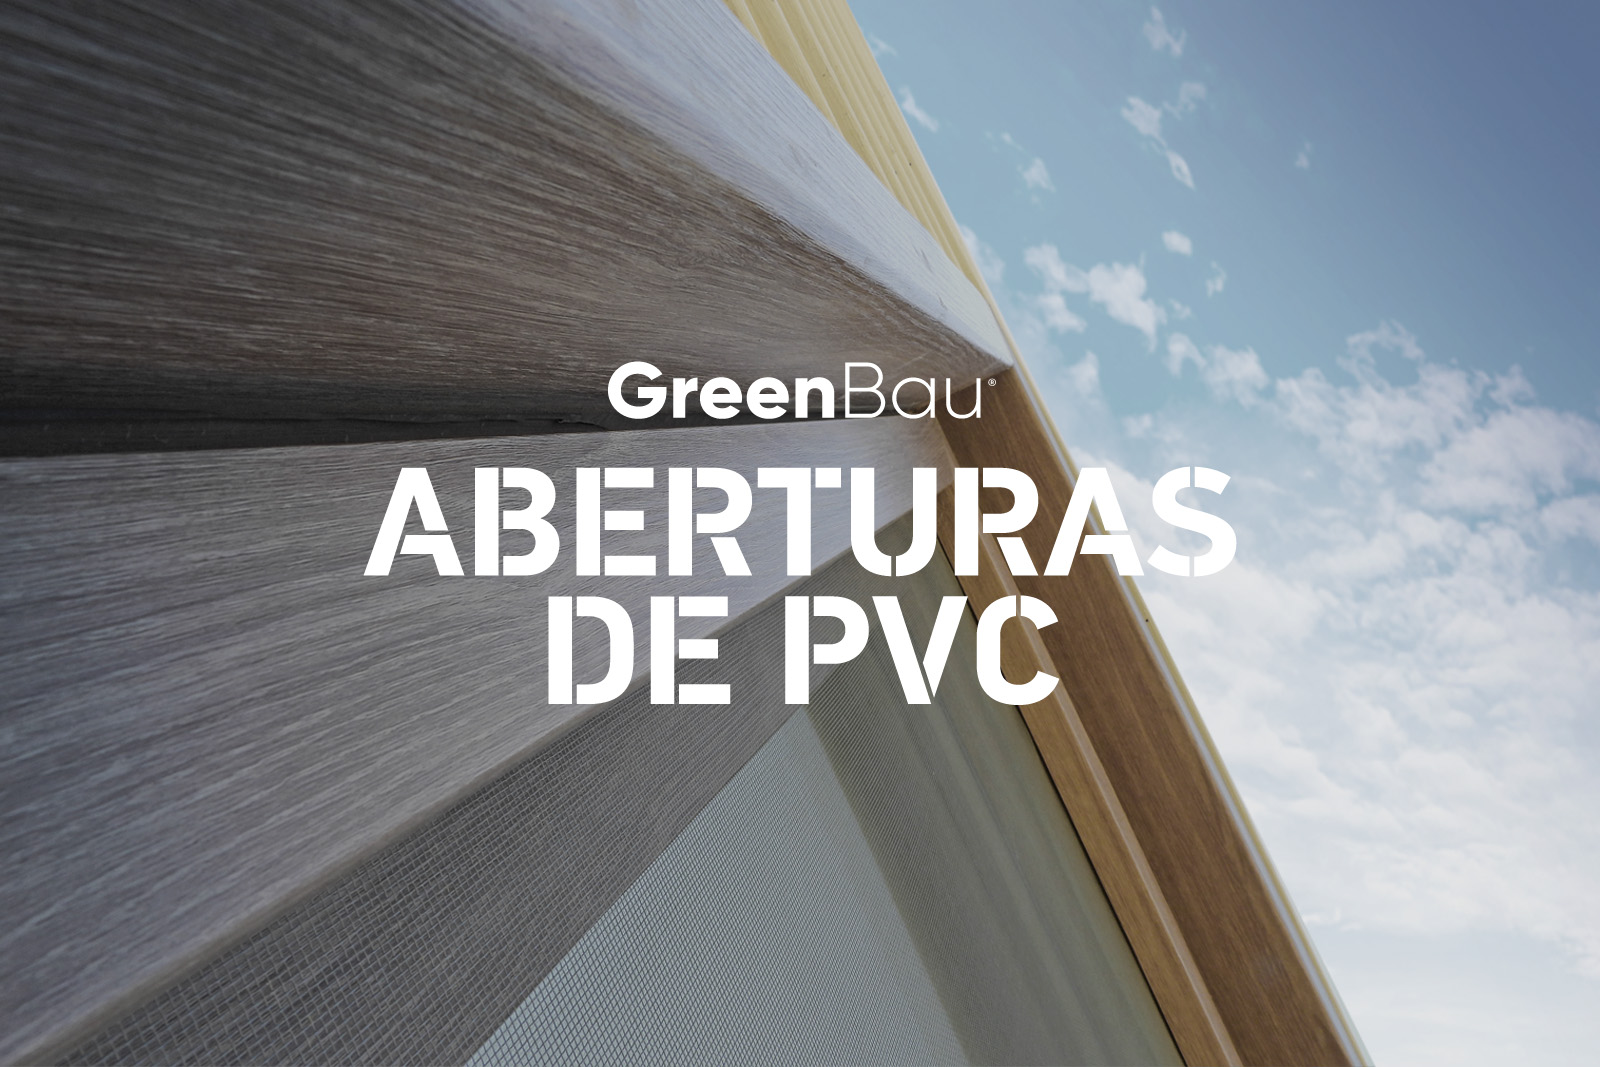 GreenBau Aberturas PVC